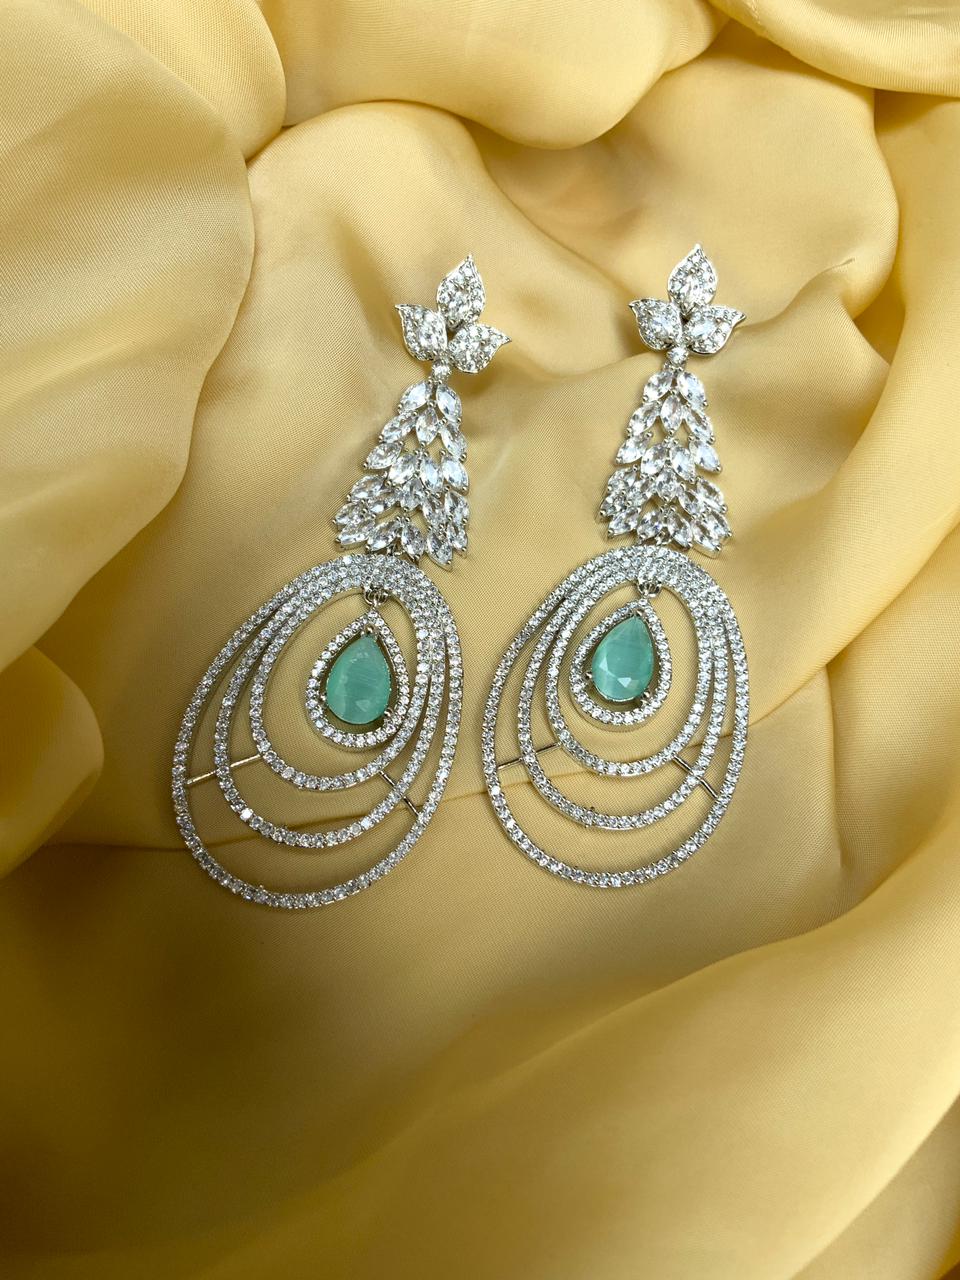 Pretty Silver American Diamond Earrings